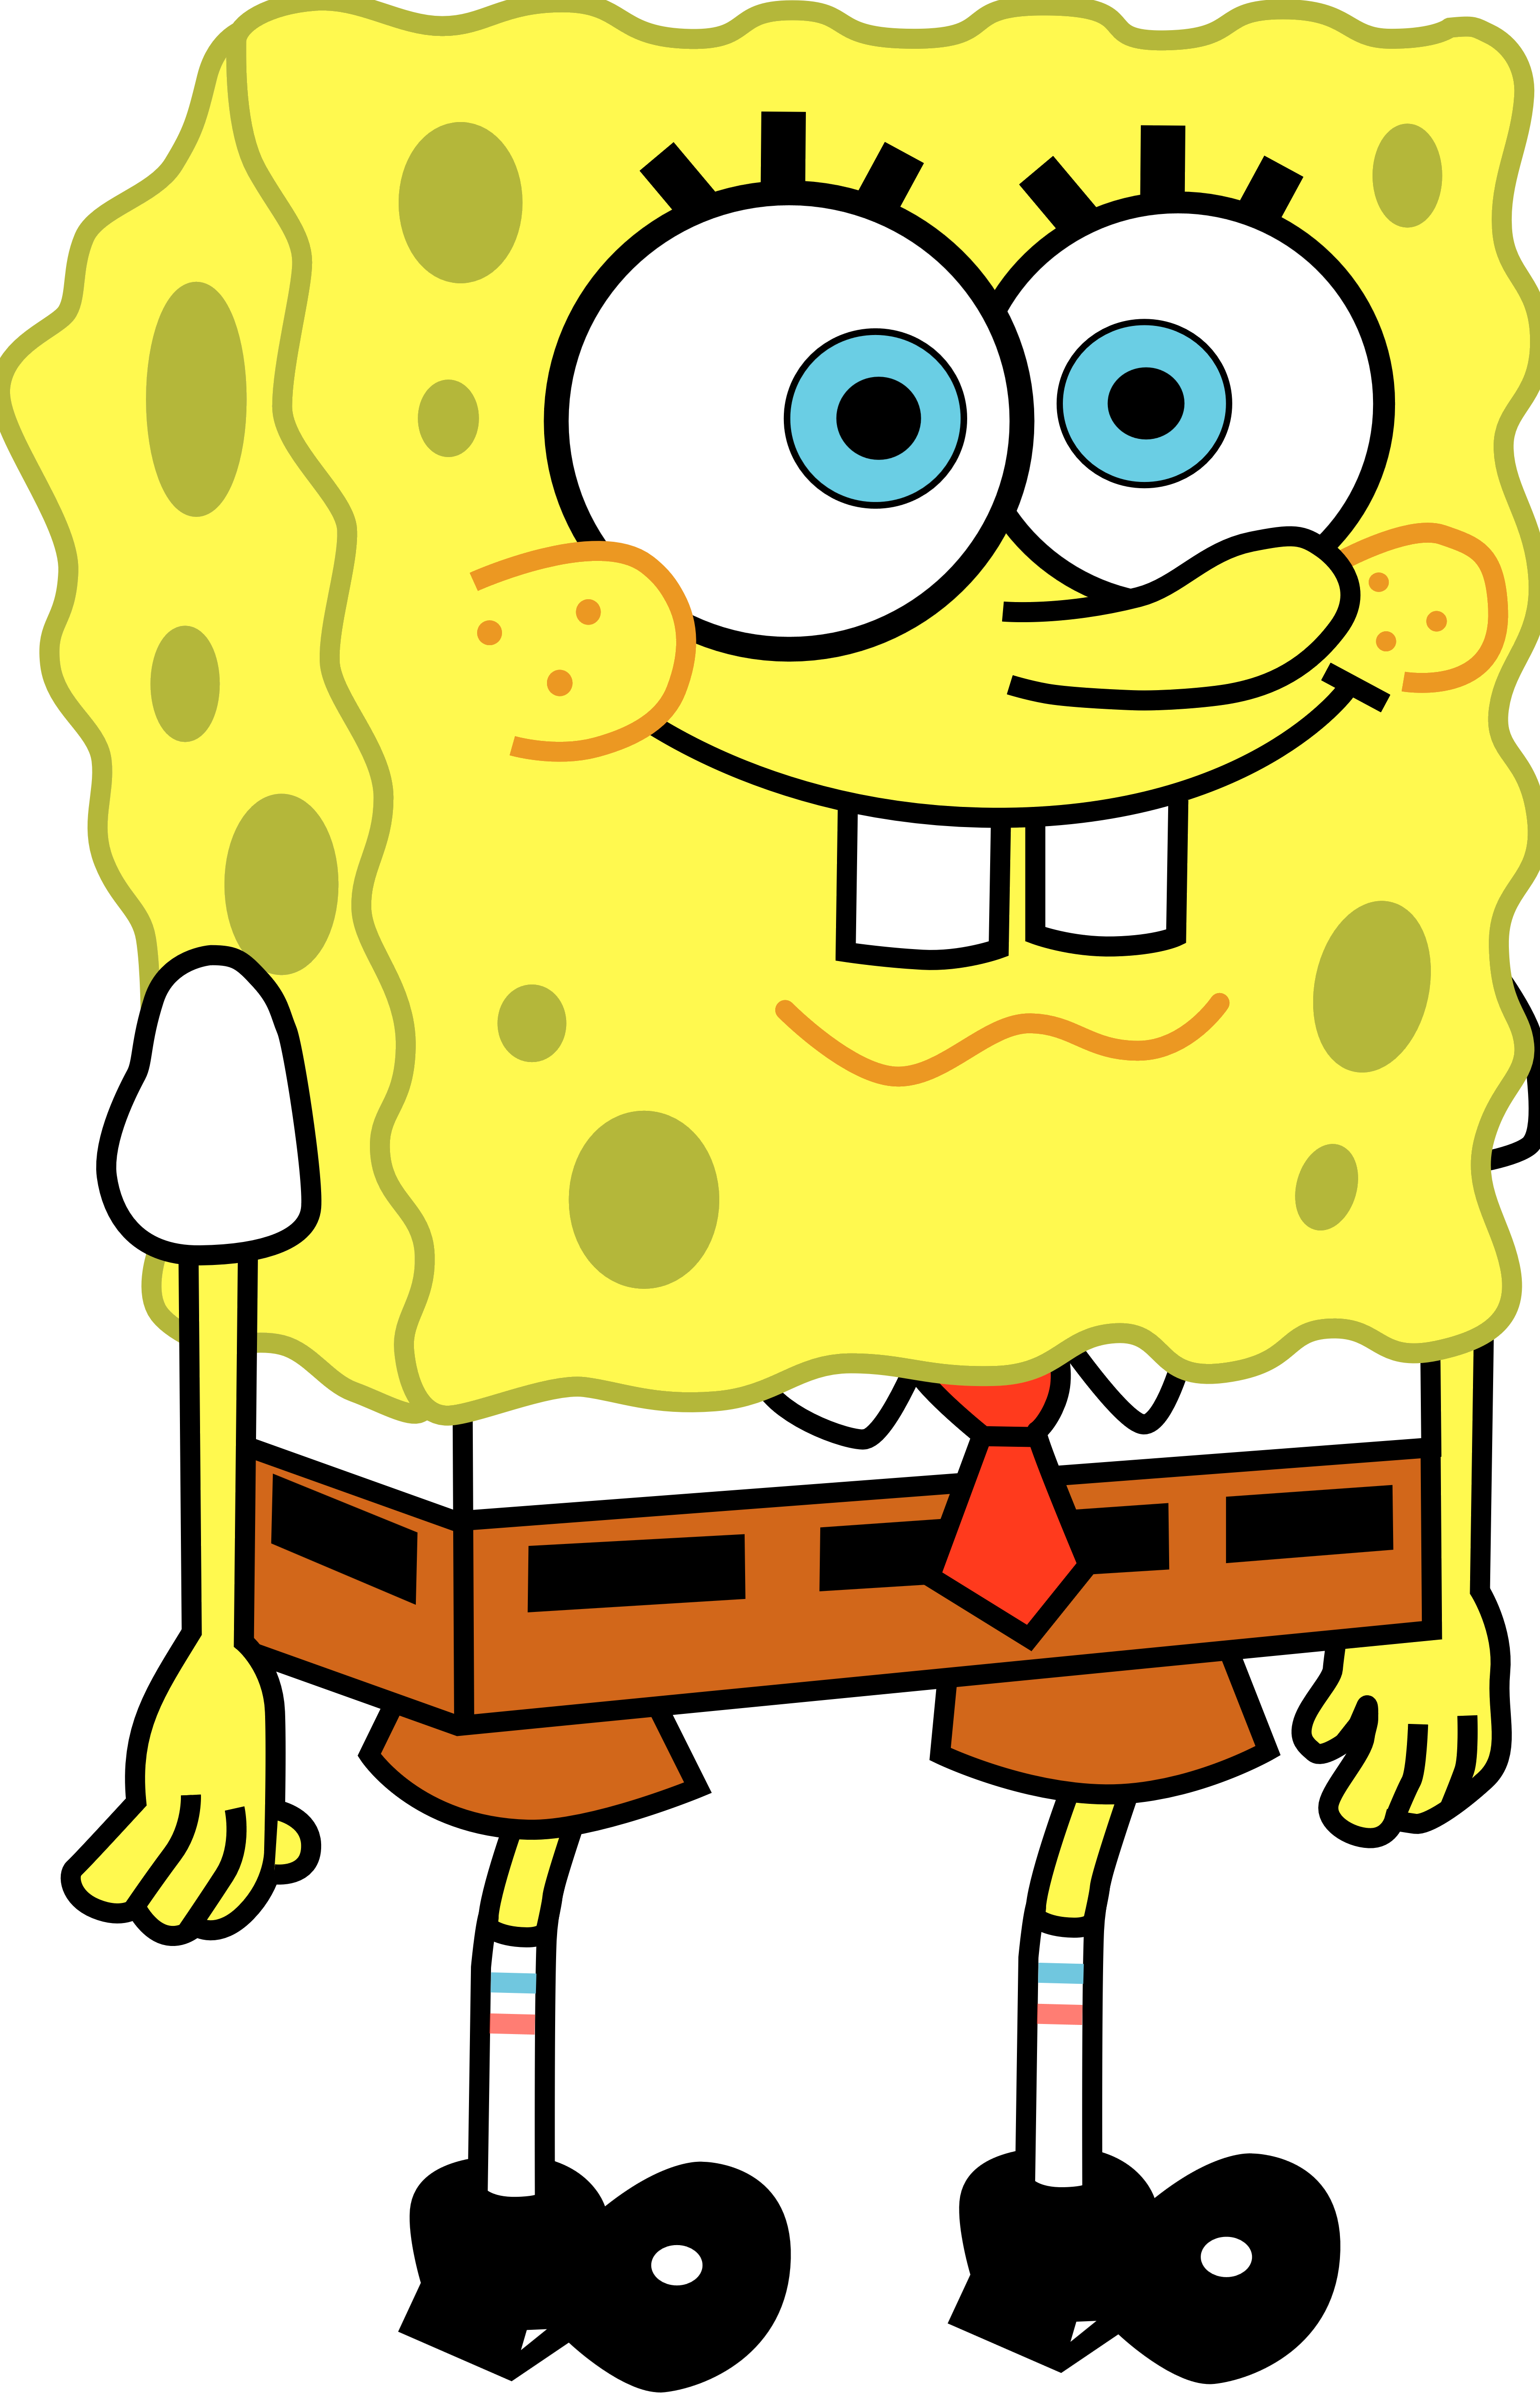 SpongeBob SquarePants - Logos Download